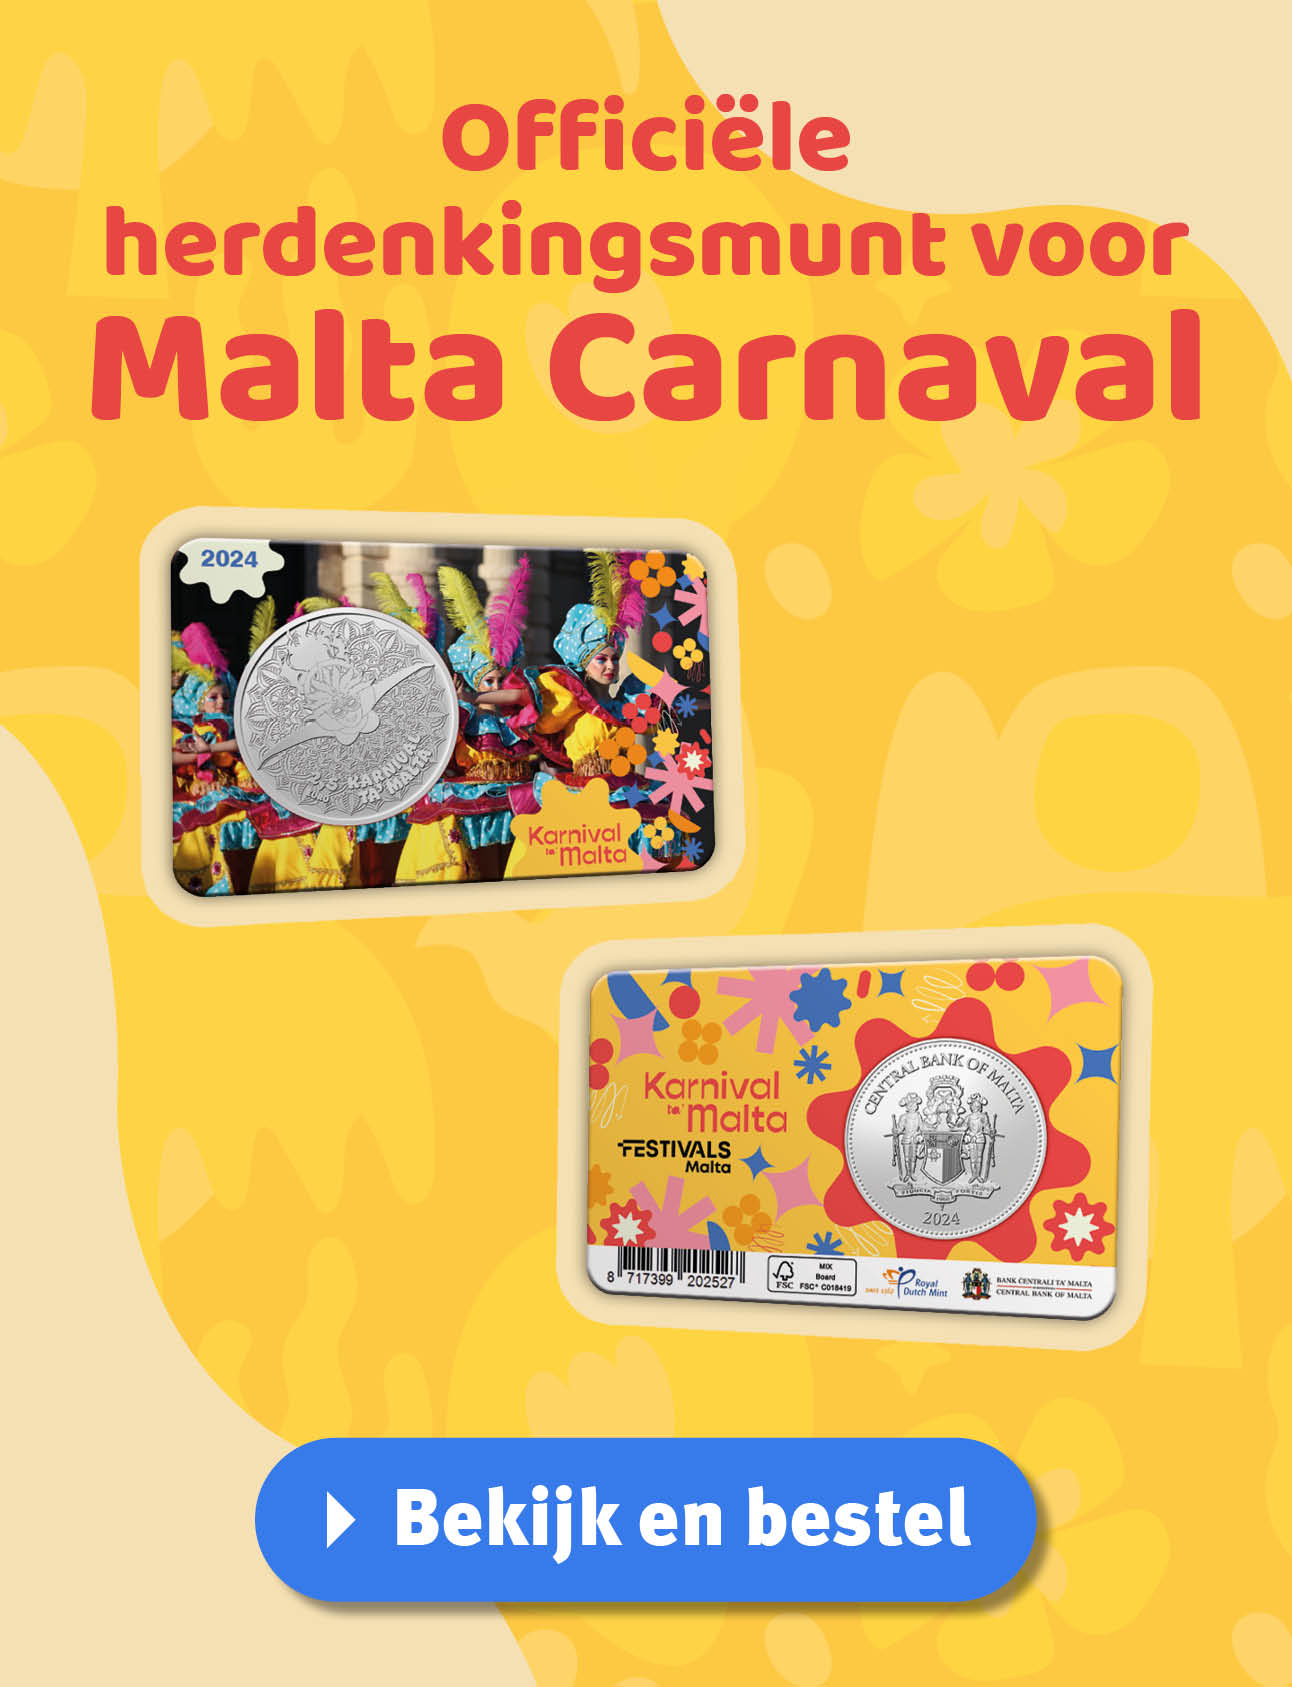 Bekijk en bestel: 2024 ‘Malta Carnaval’ uitgiften